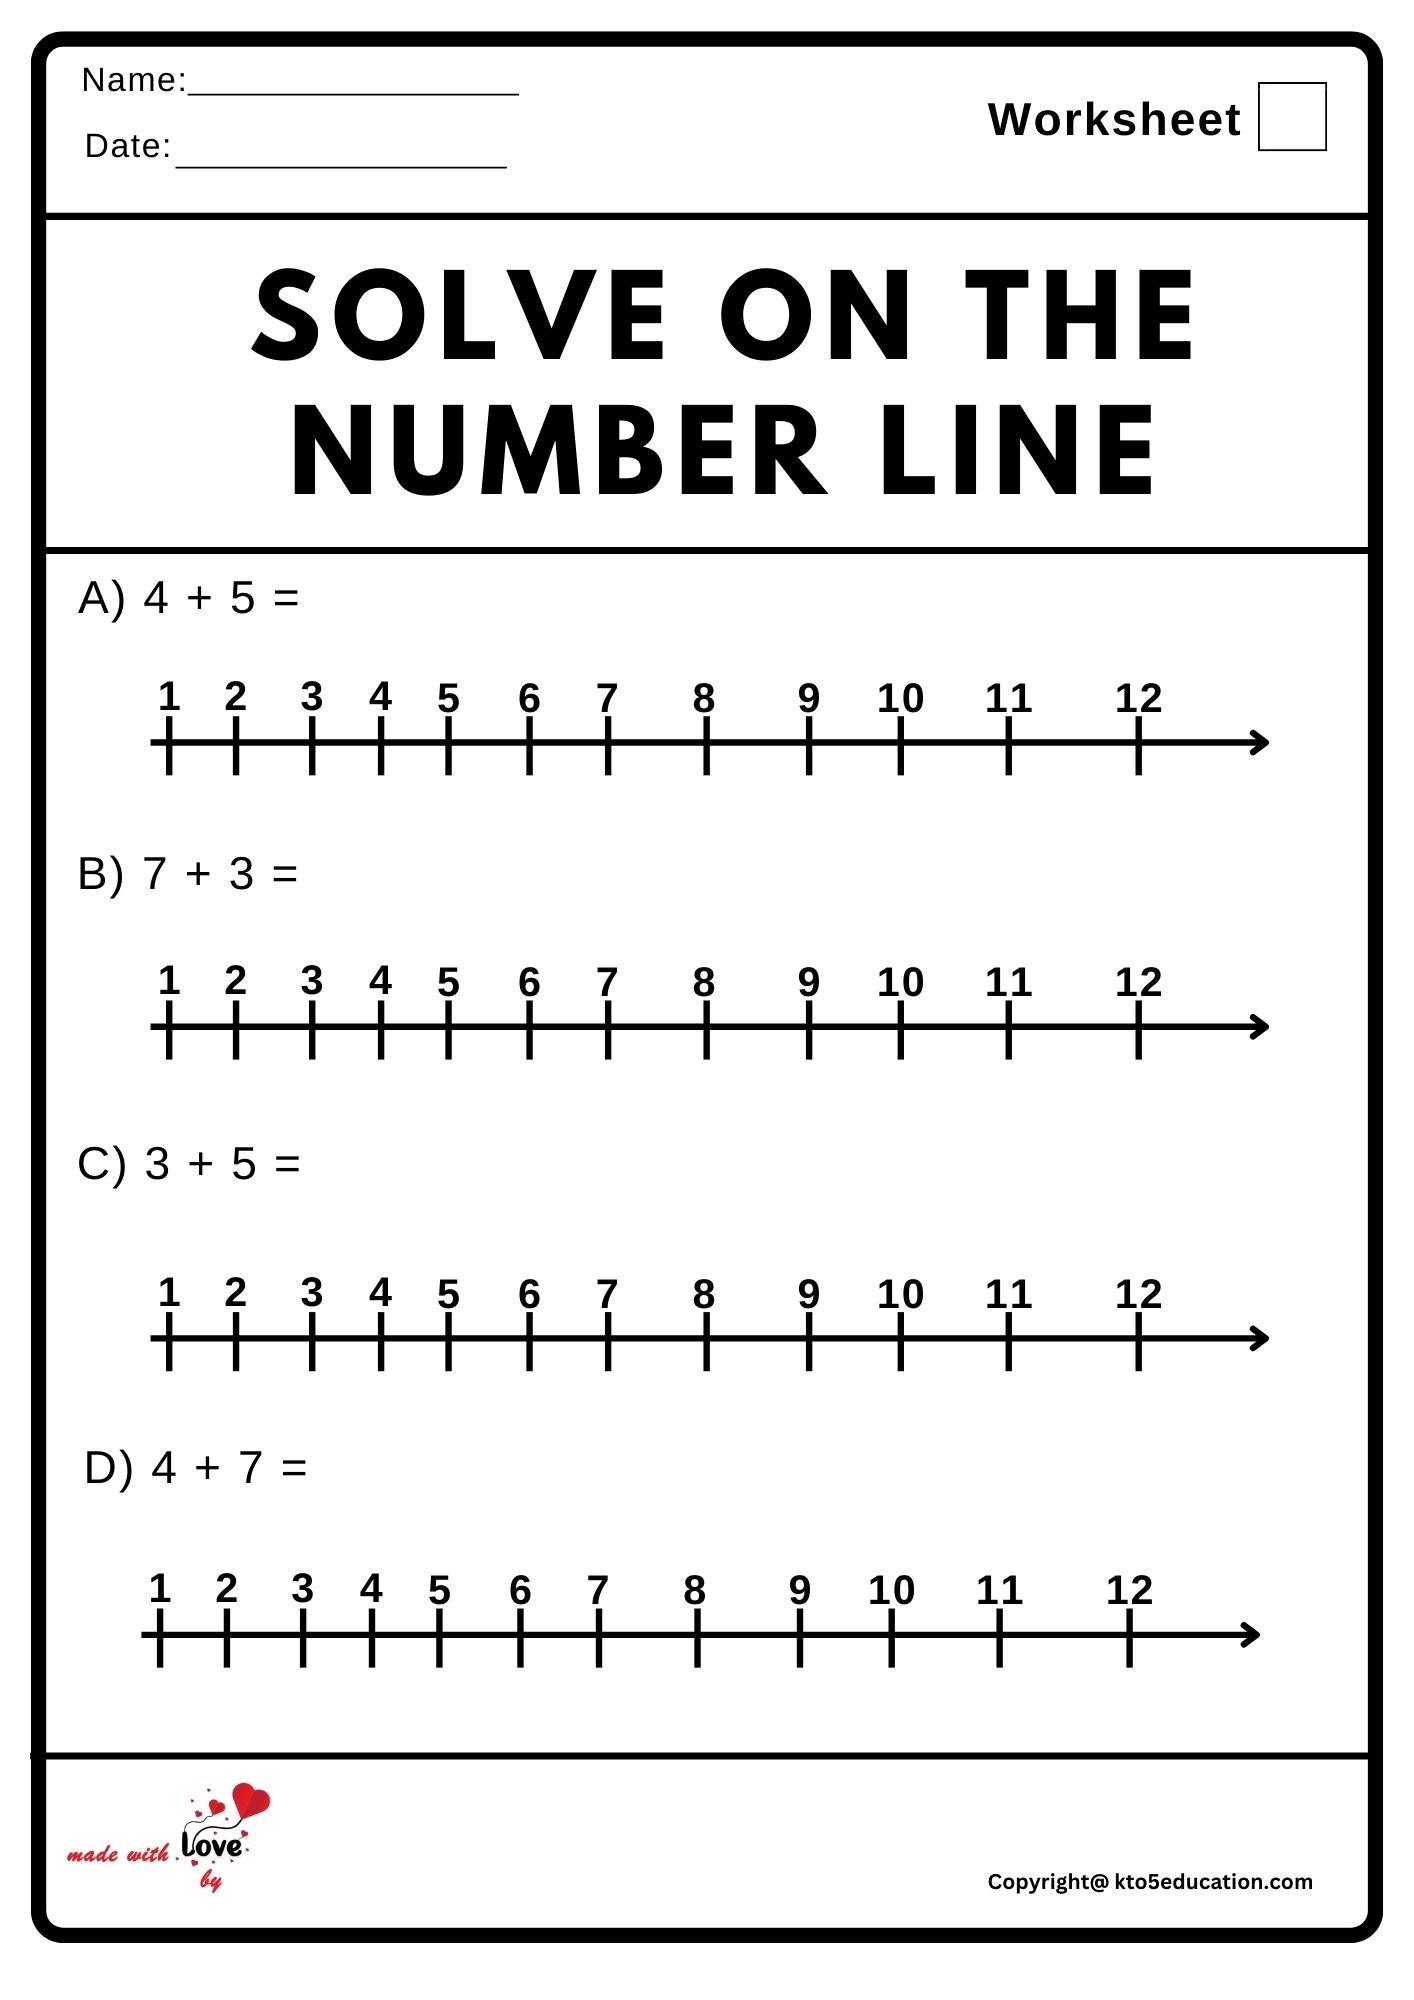 Solve On The Number Line Worksheet 2